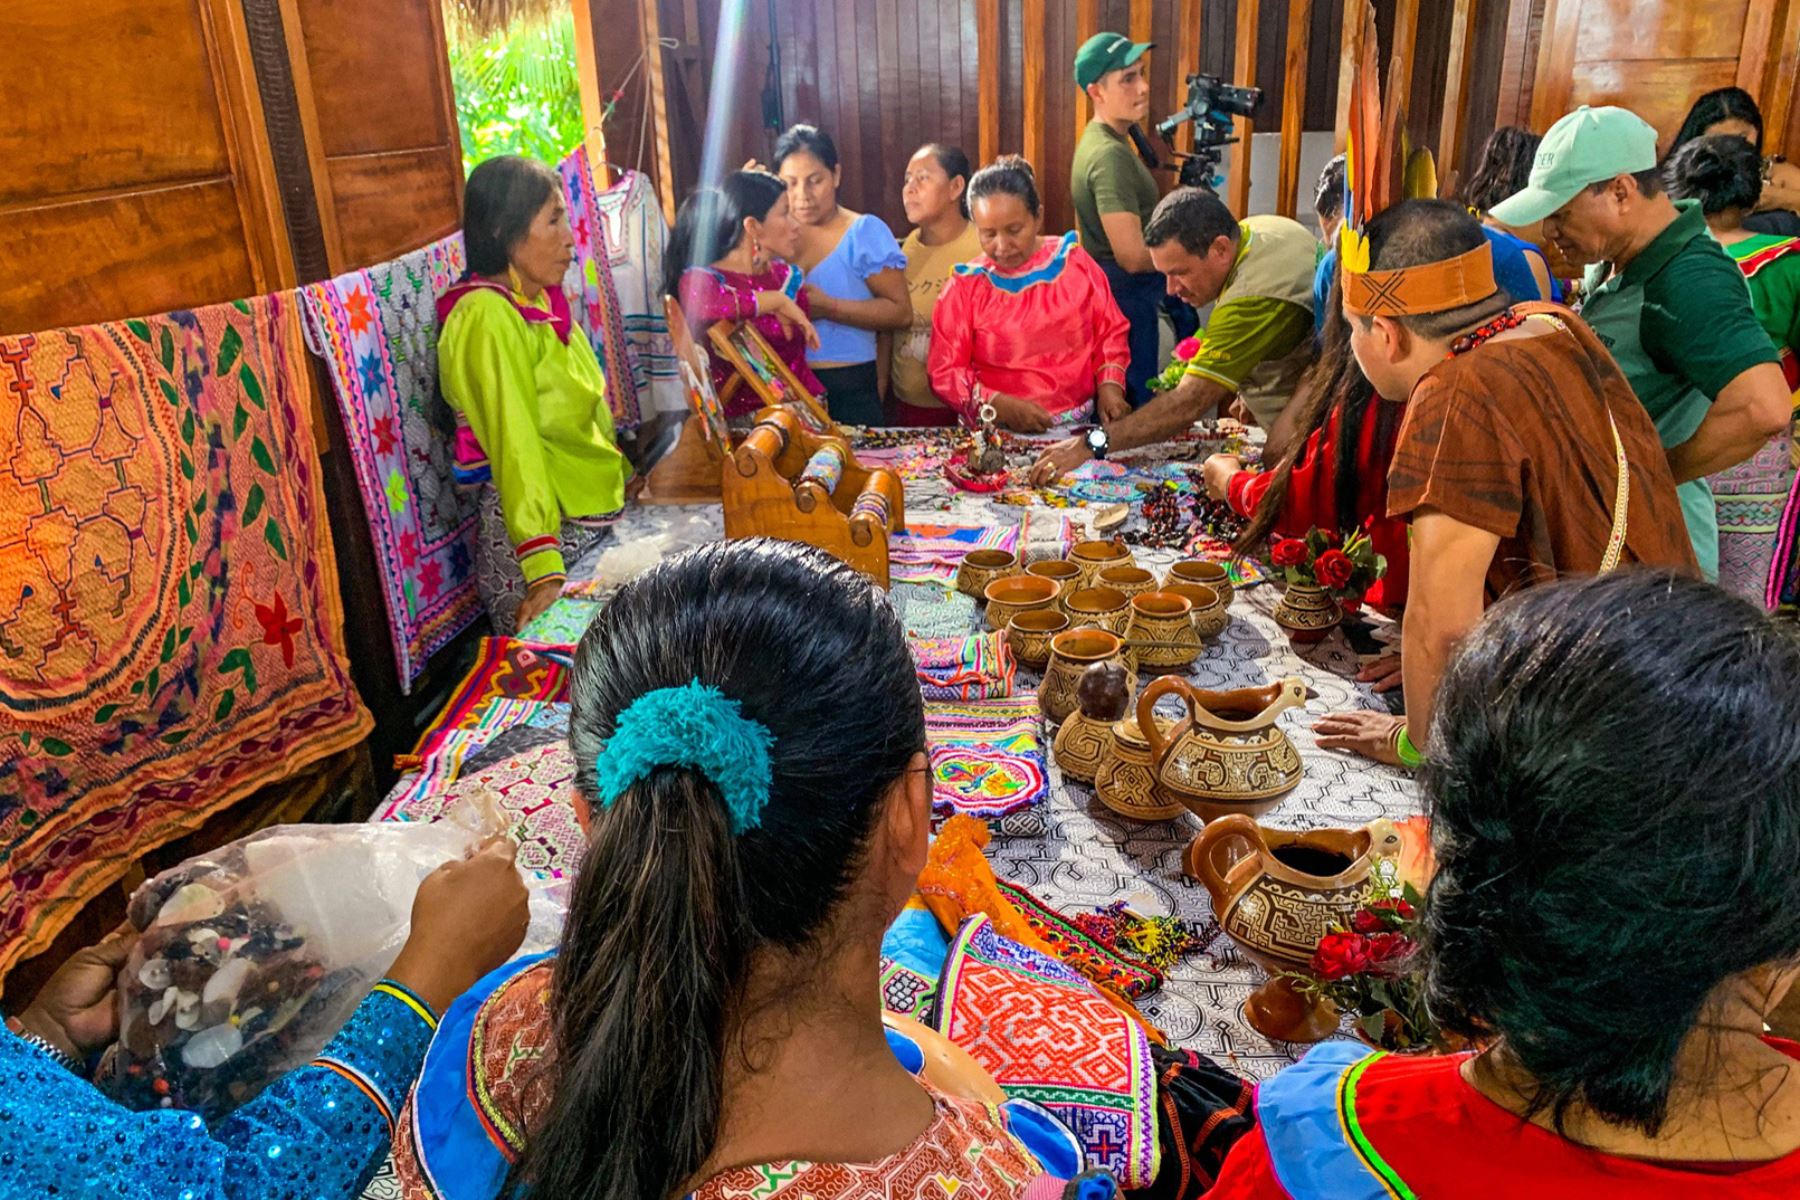 Las instalaciones beneficiarán directamente a los 33 miembros de la asociación, compuesta por 32 mujeres y 1 hombre, quienes se dedican a la confección de variadas artesanías textiles. Foto: ANDINA/Sernanp